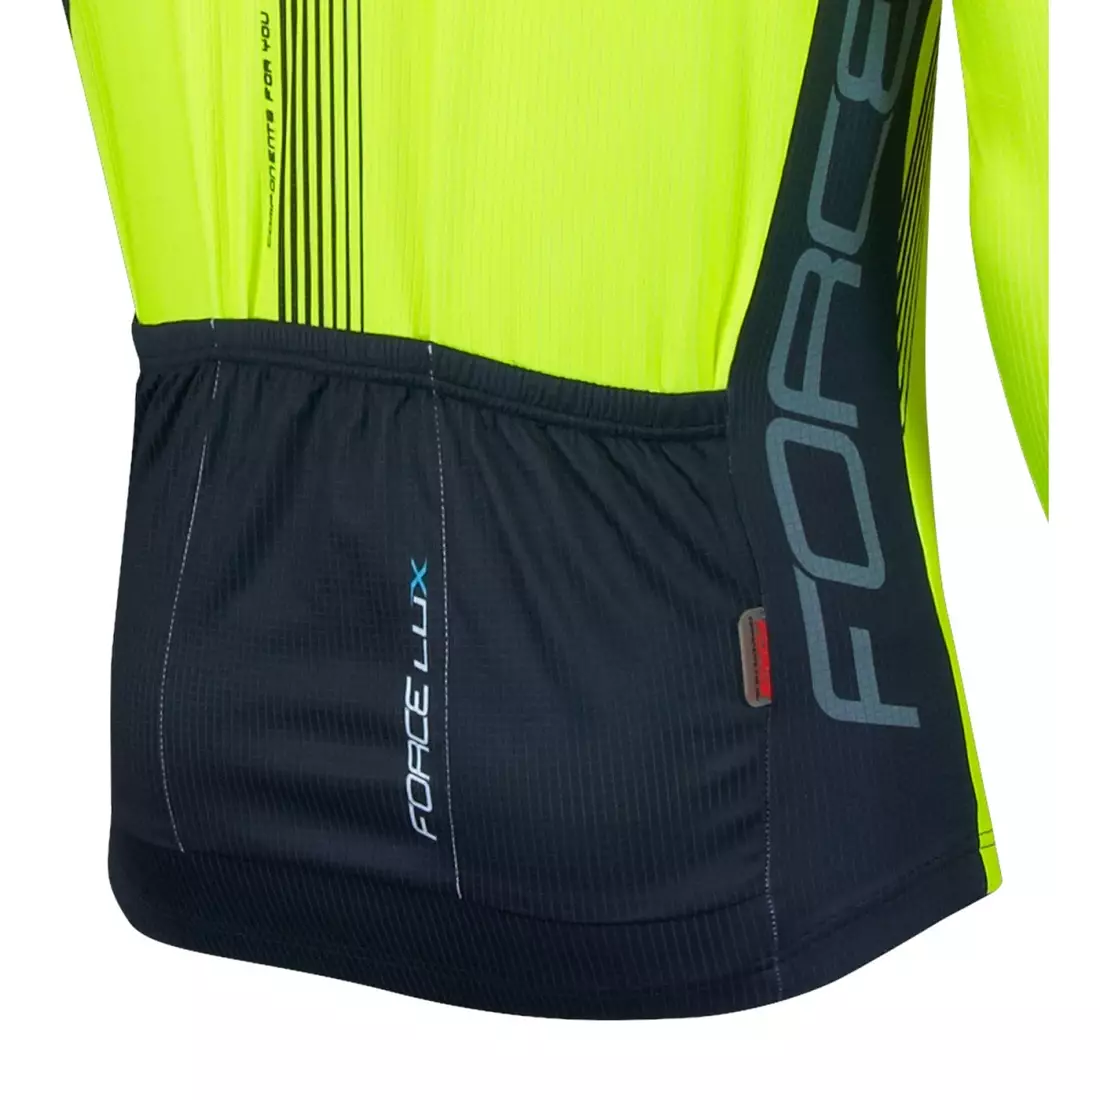 FORCE LUX men's cycling jersey long sleeve black-fluor 900141